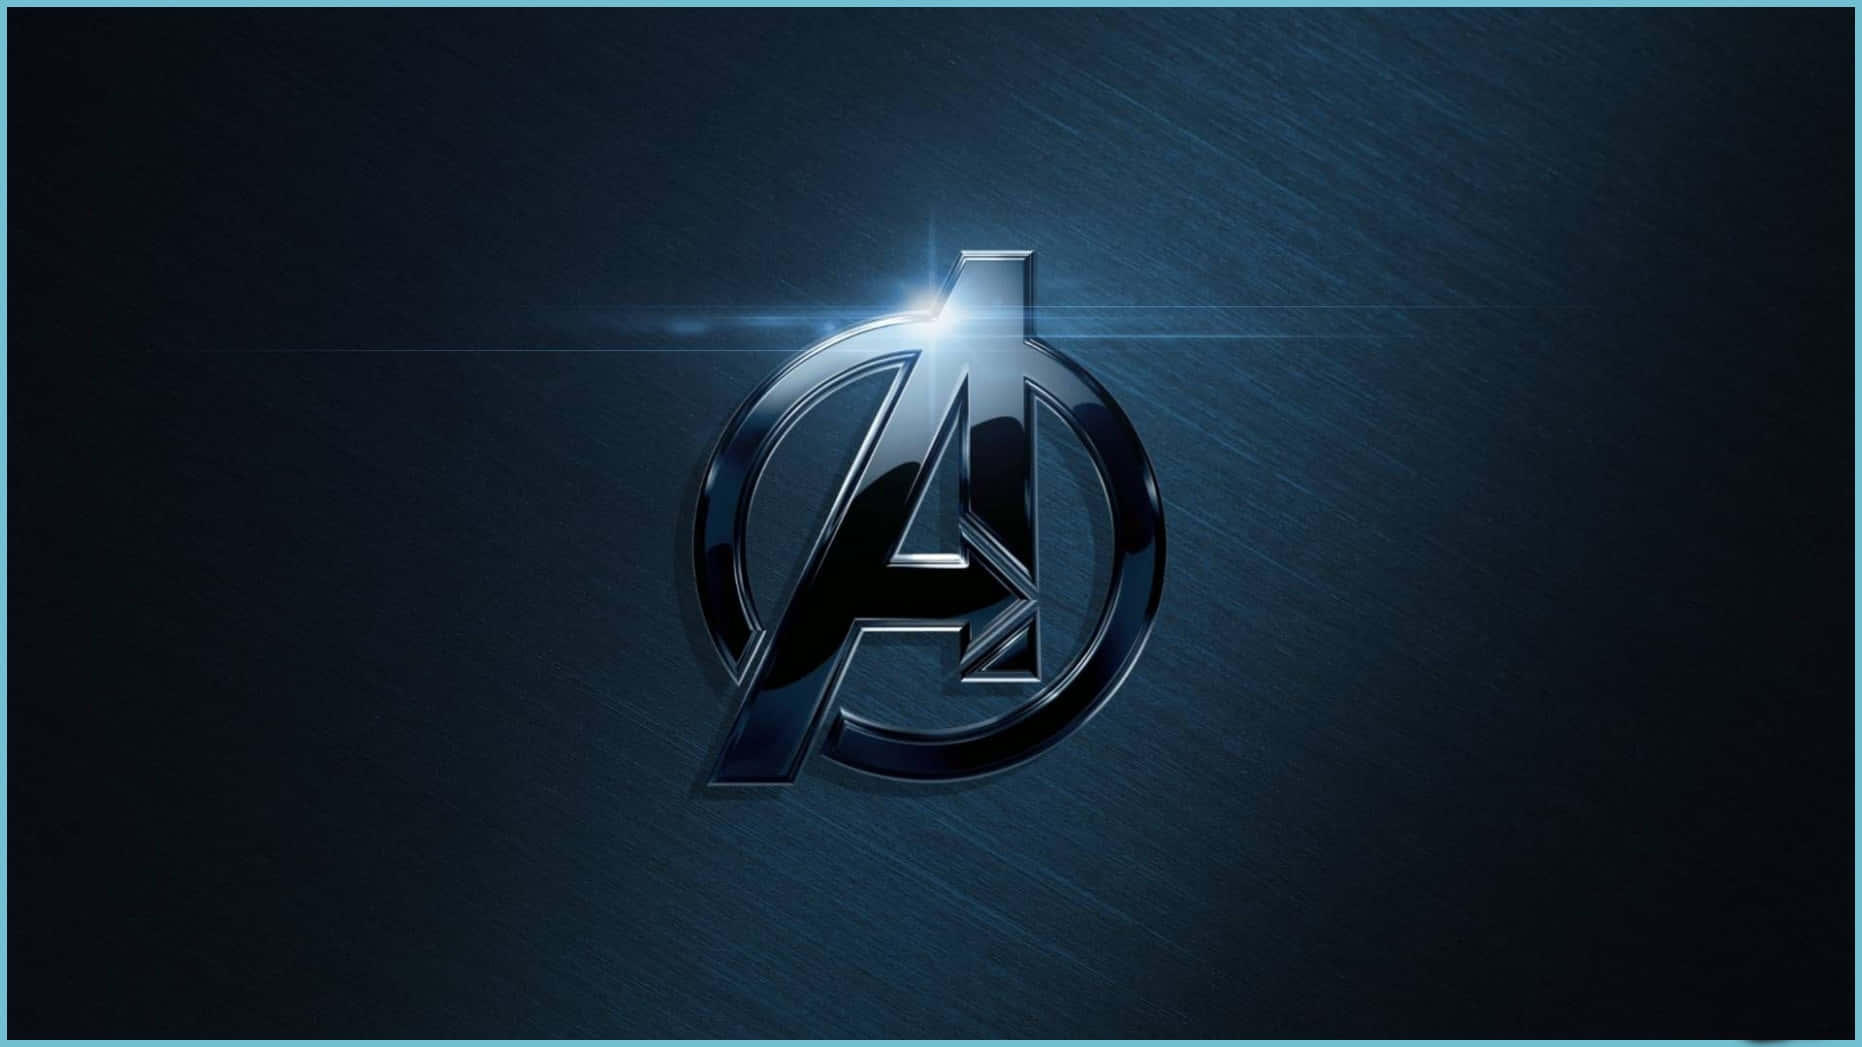 Bliv medlem af de Avengers med en særlig udgave laptop perfekt til pro-gamers Wallpaper